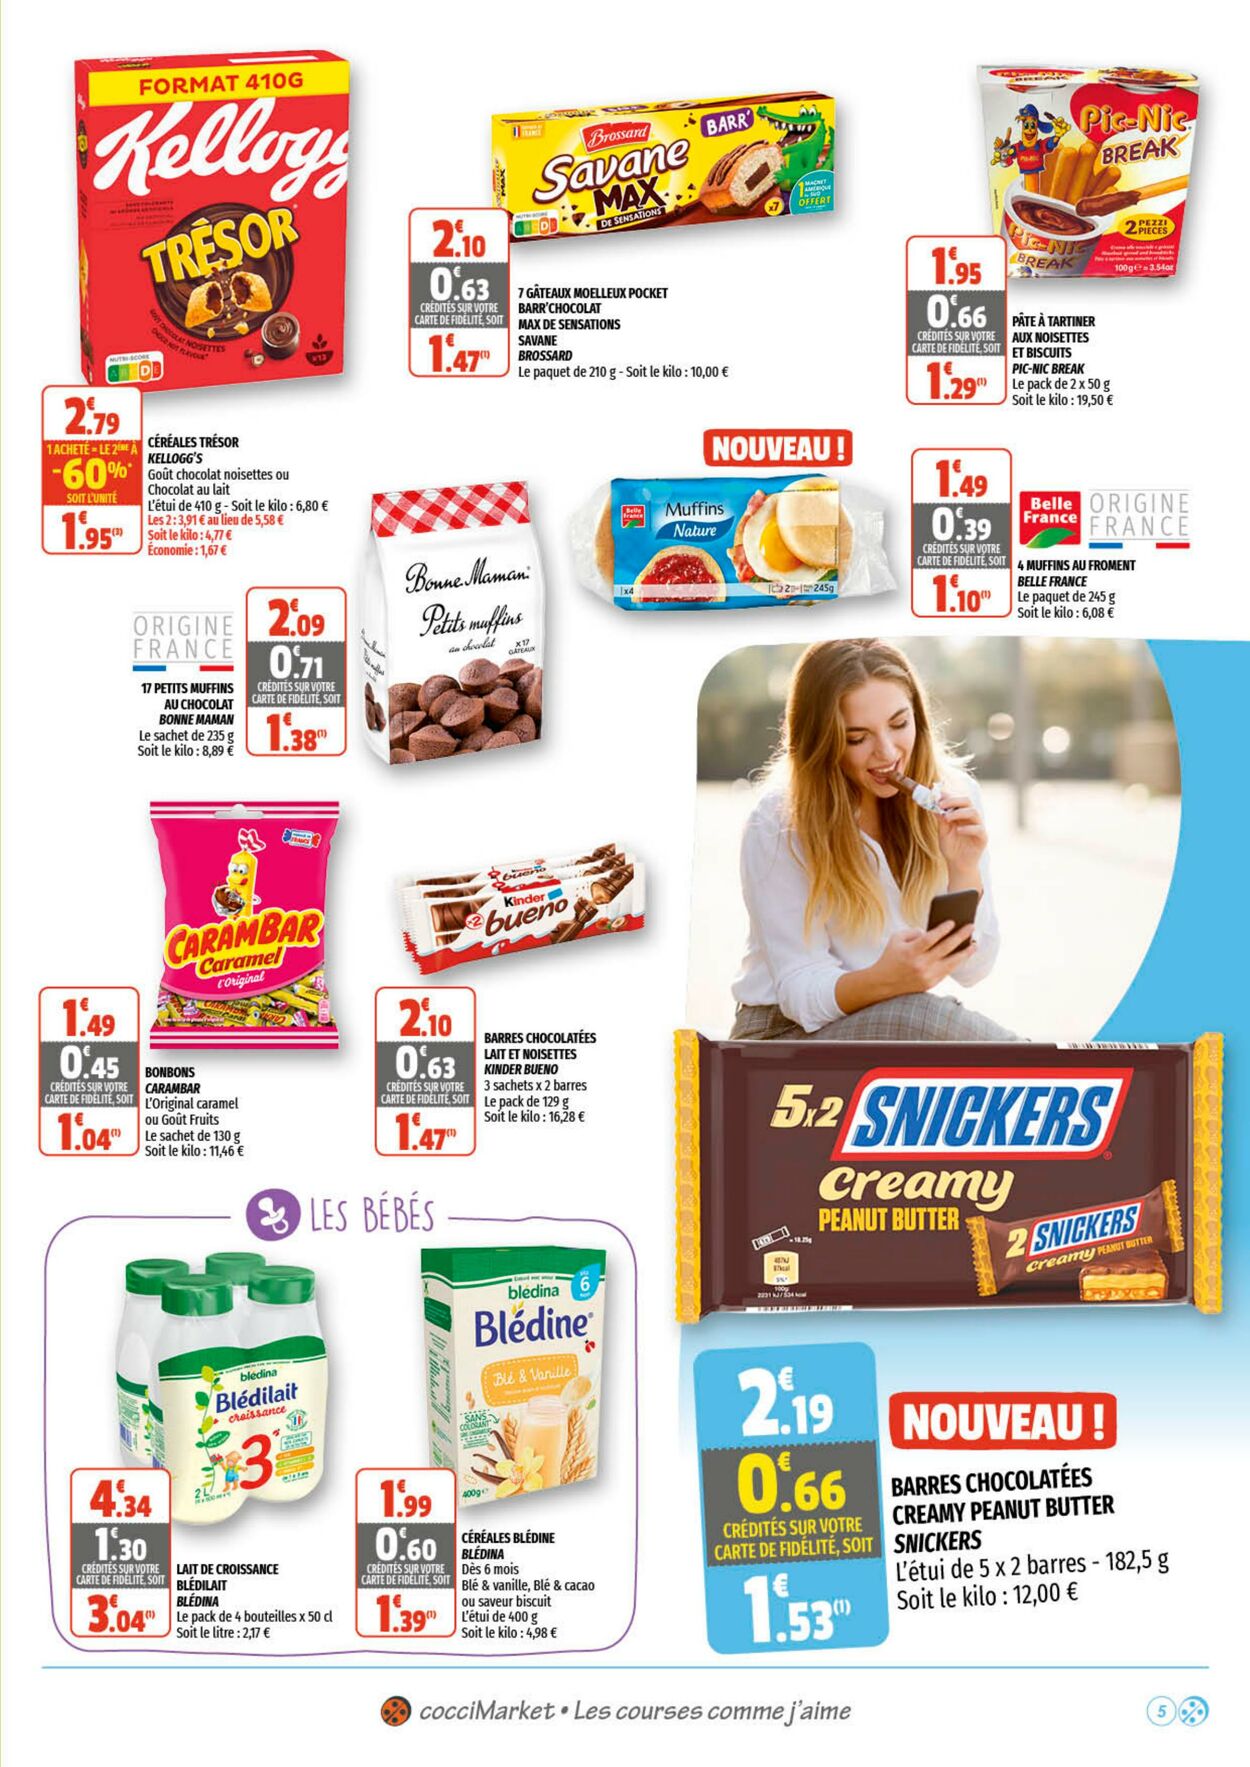 Catalogue Coccinelle 22.06.2022 - 03.07.2022